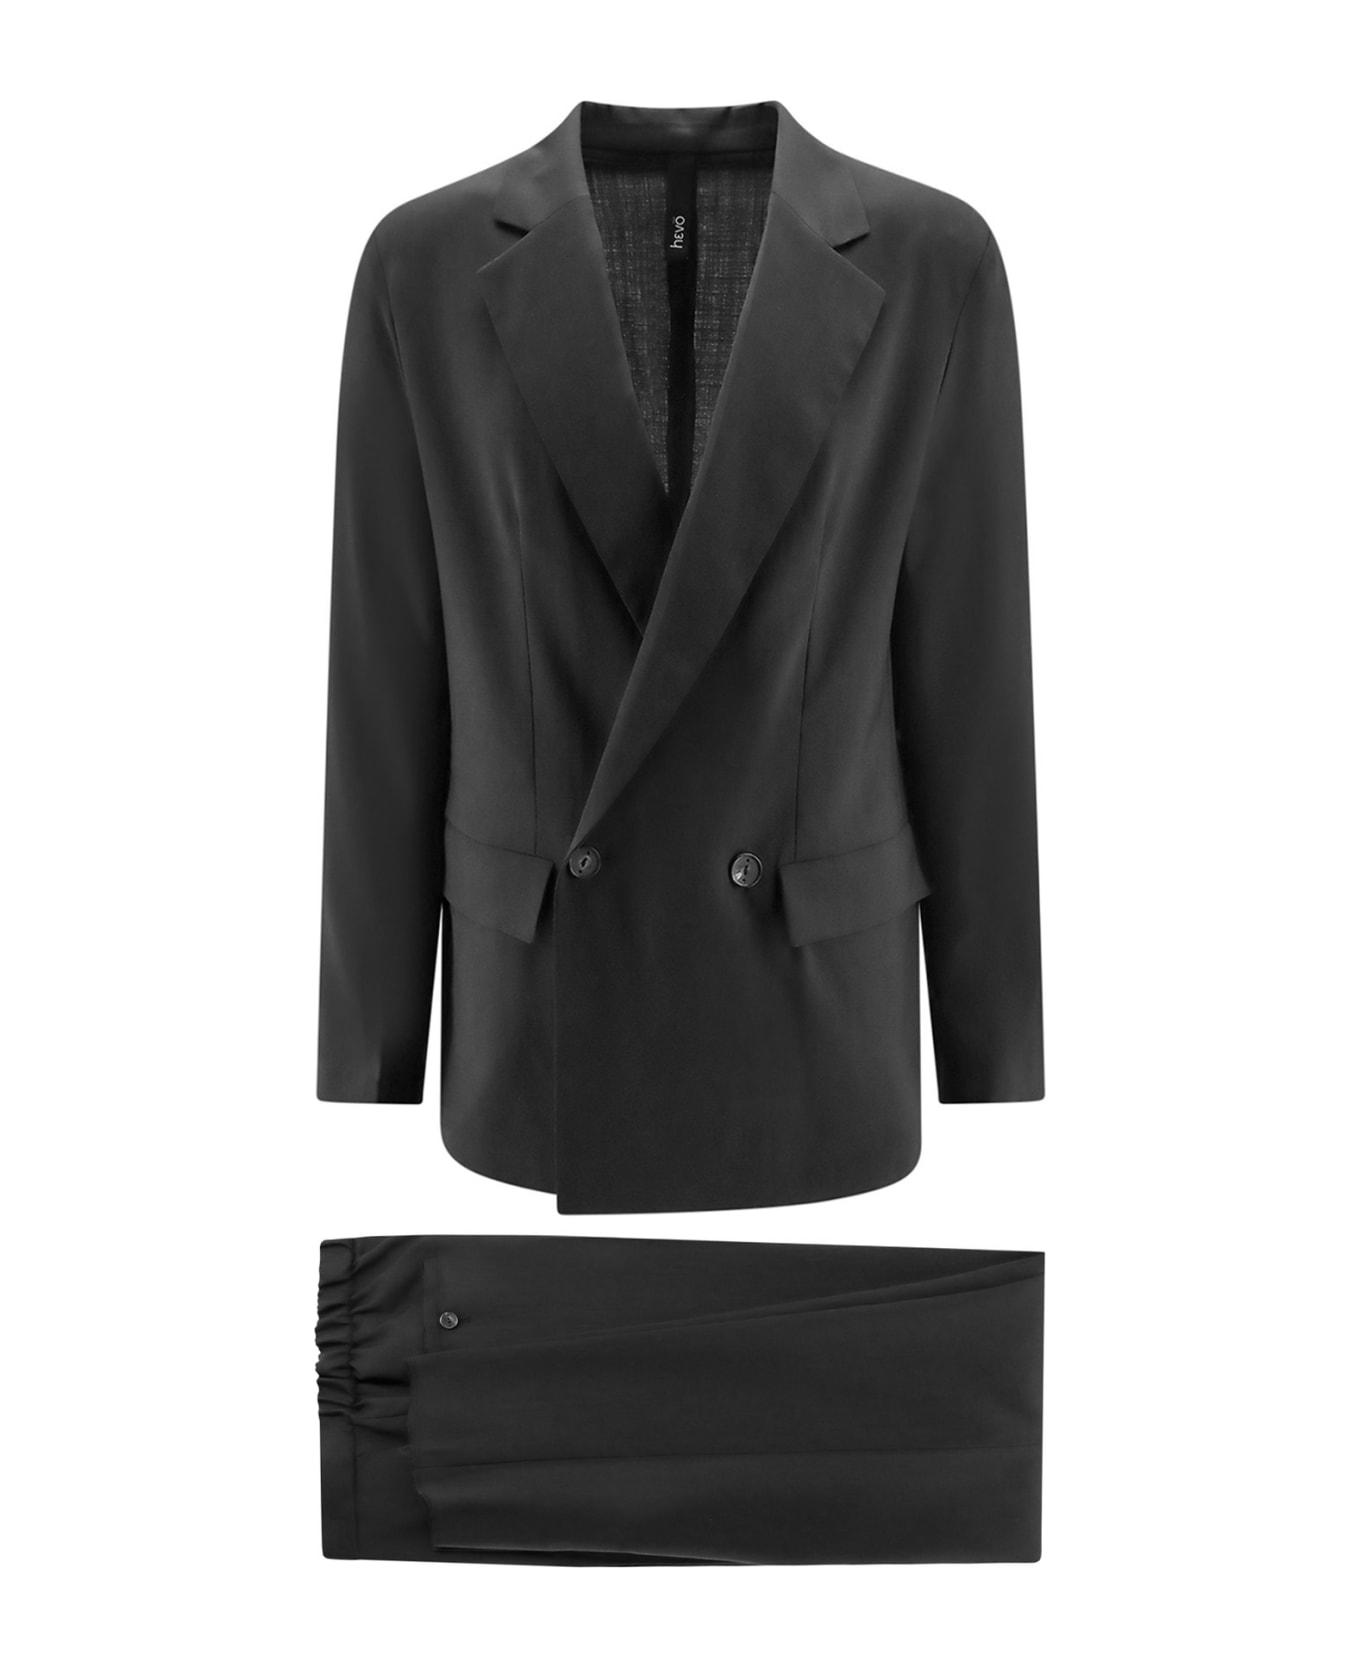 Hevò Suit - Black